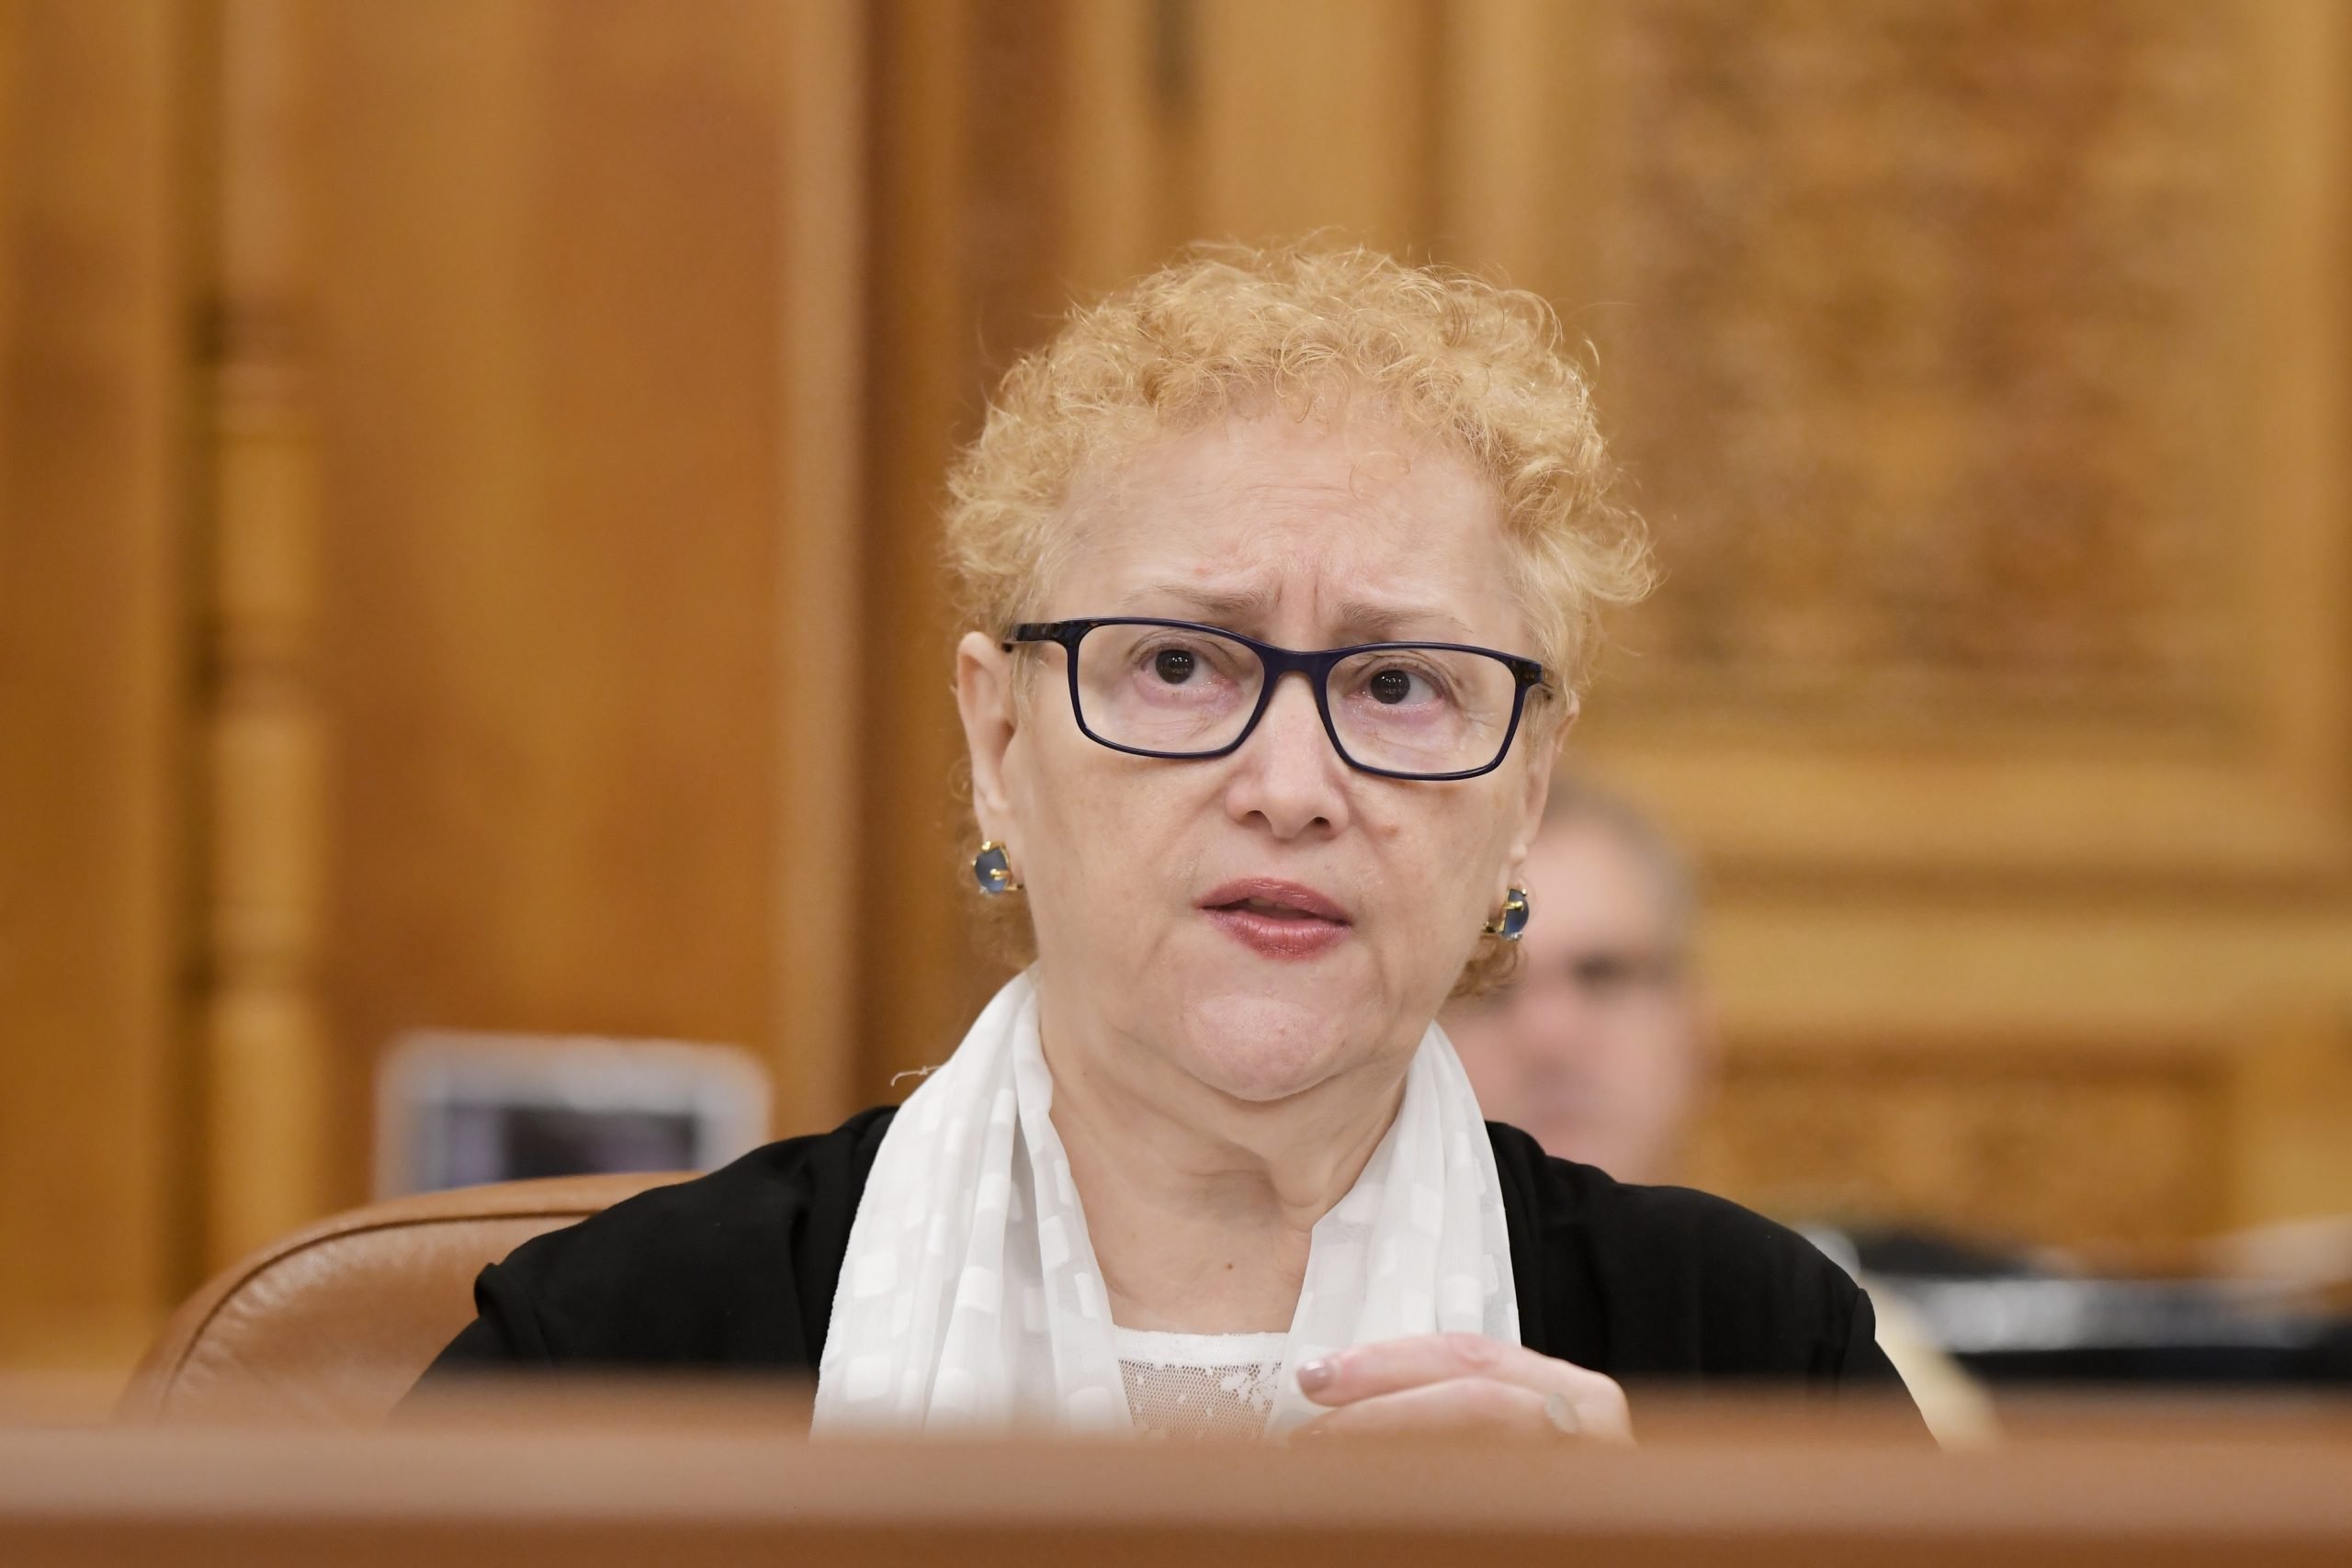 Renate Weber: Trebuie modificată legislația. ”Sunt oripilată” de zecile de cazuri de copii, victime ale unor abuzuri sexuale groaznice